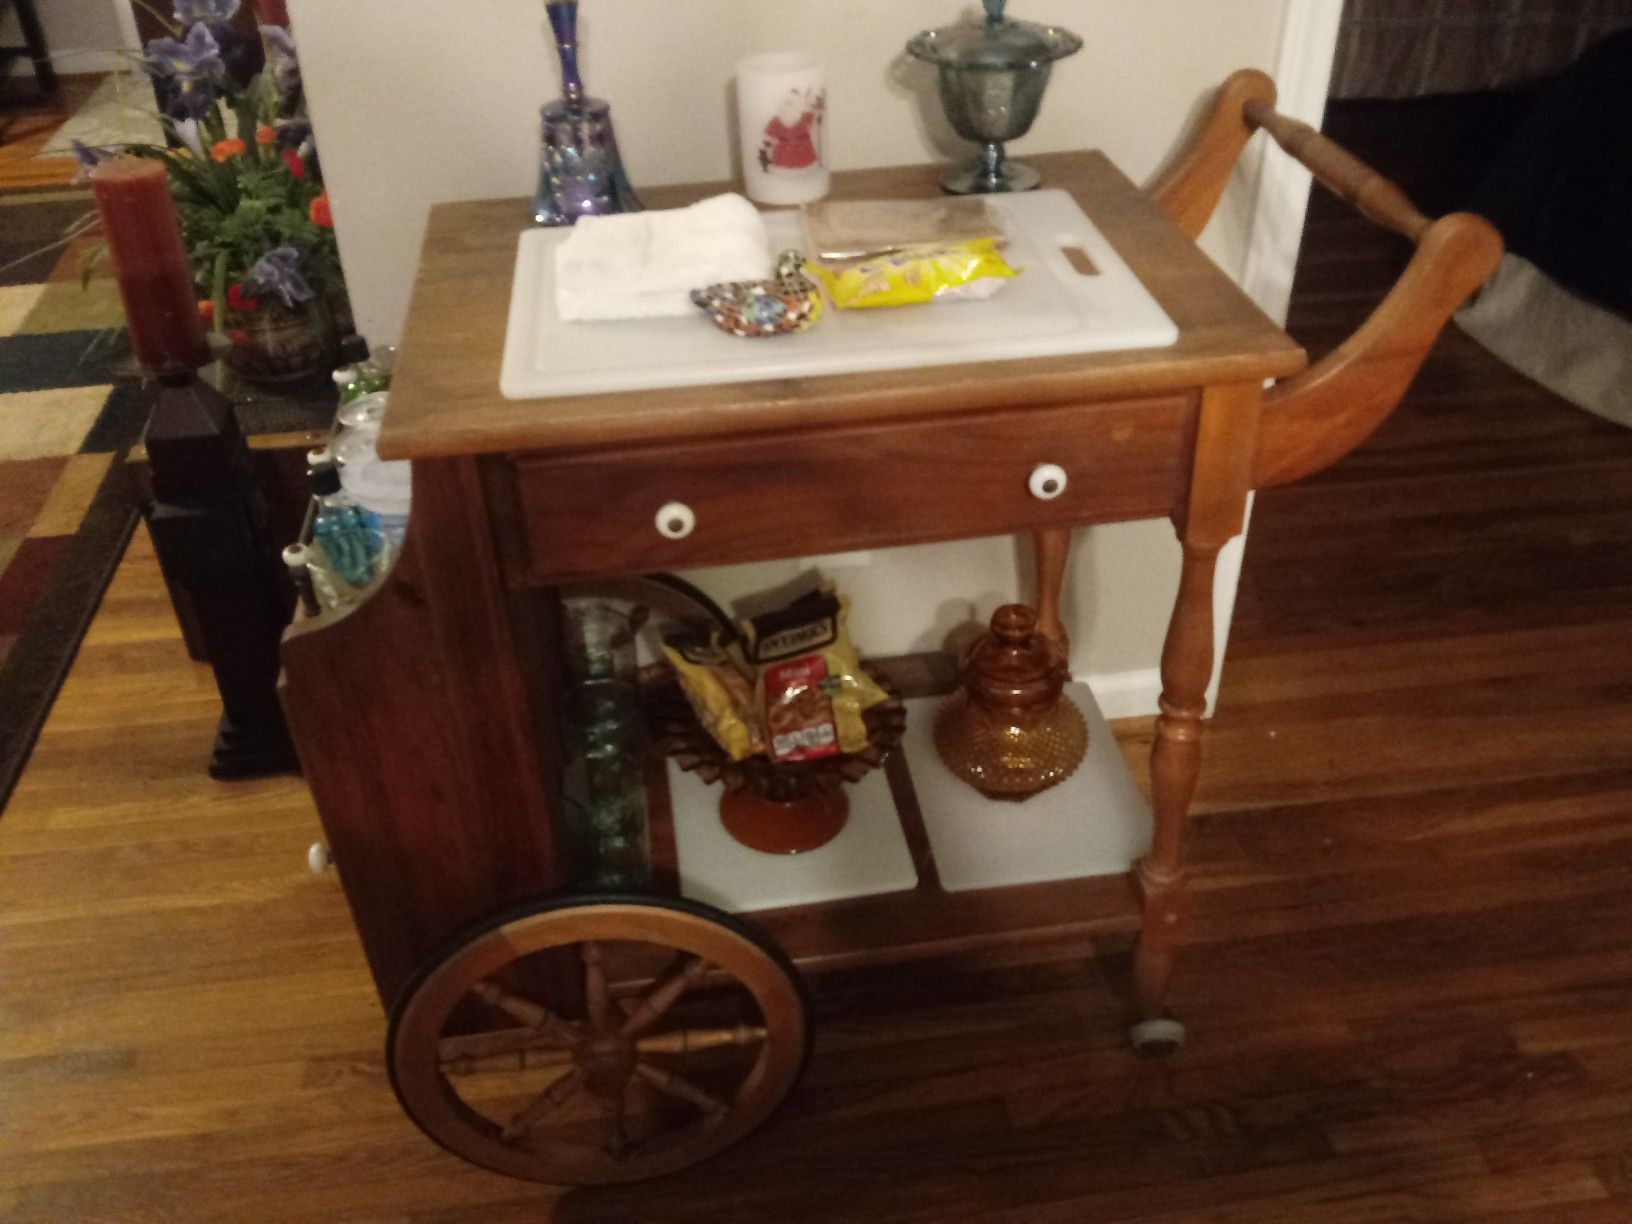 Vintage tea cart